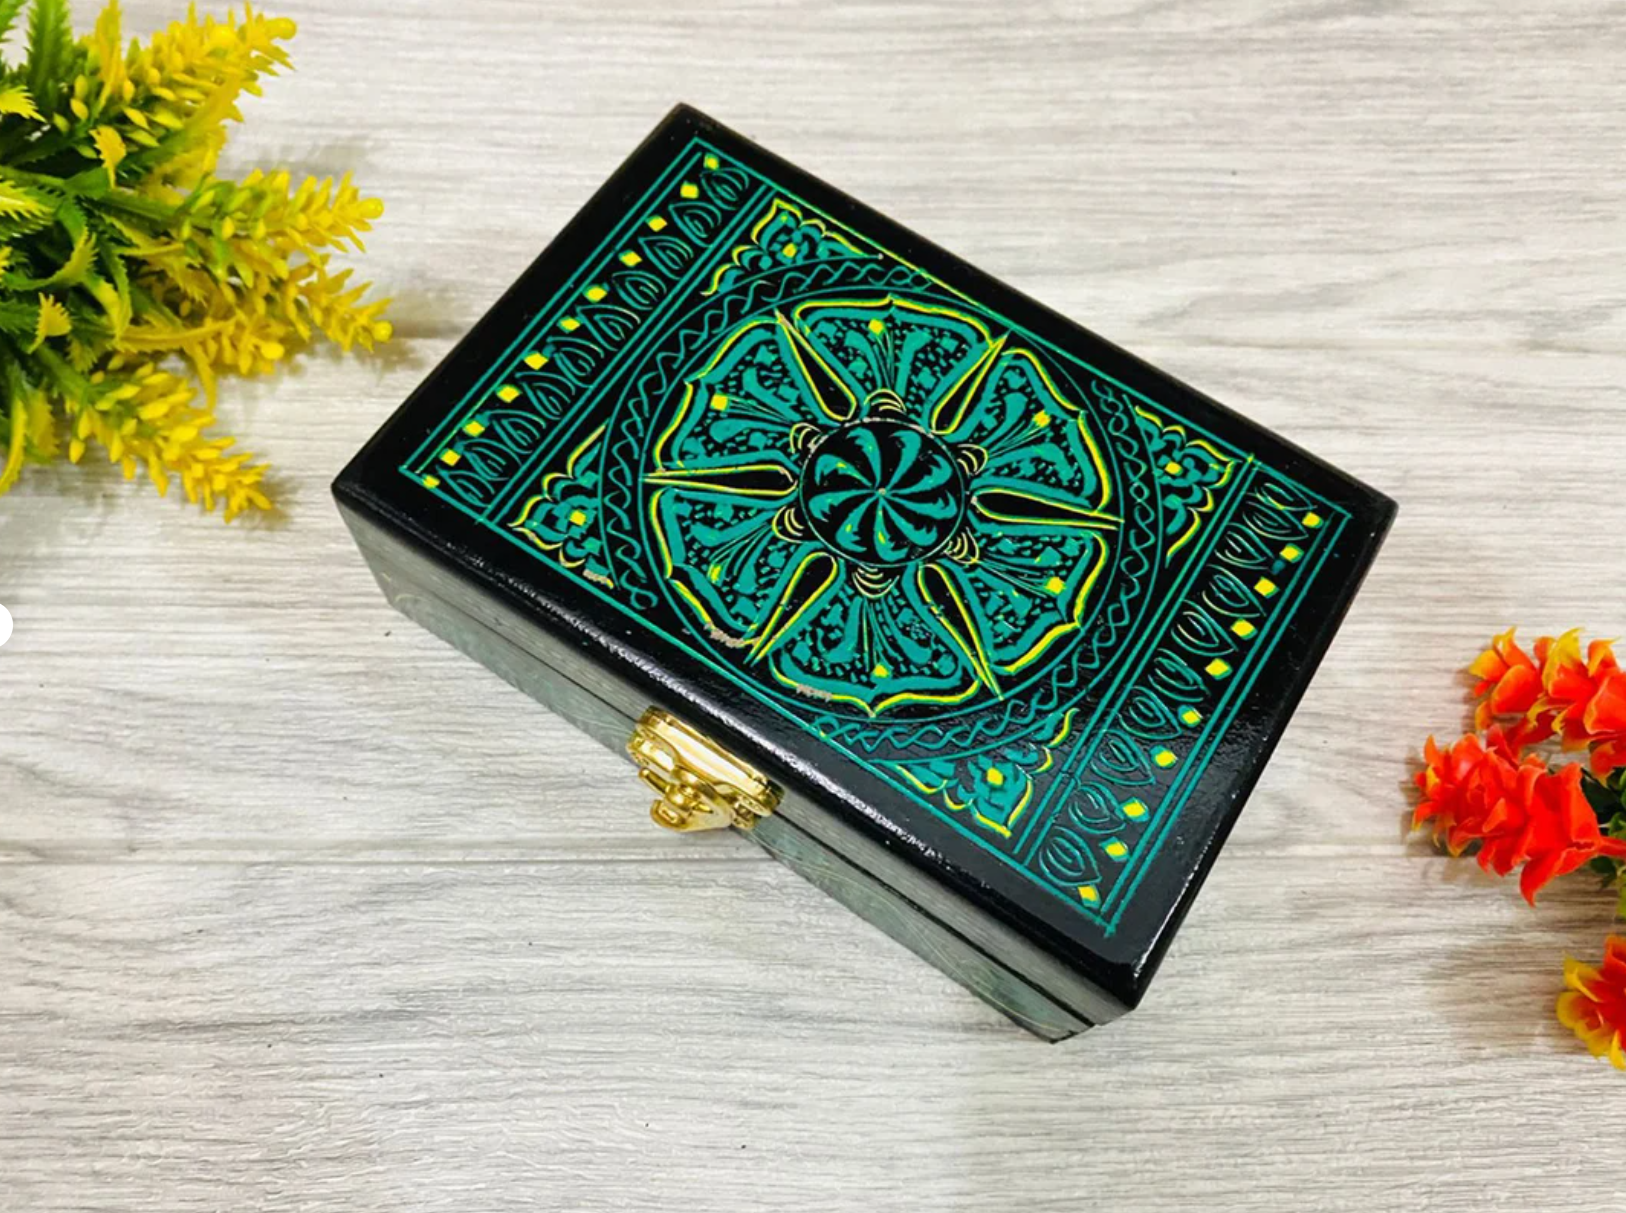 Small Laquer Art Mini Jewelry Box - Green I Lauqer art Craft